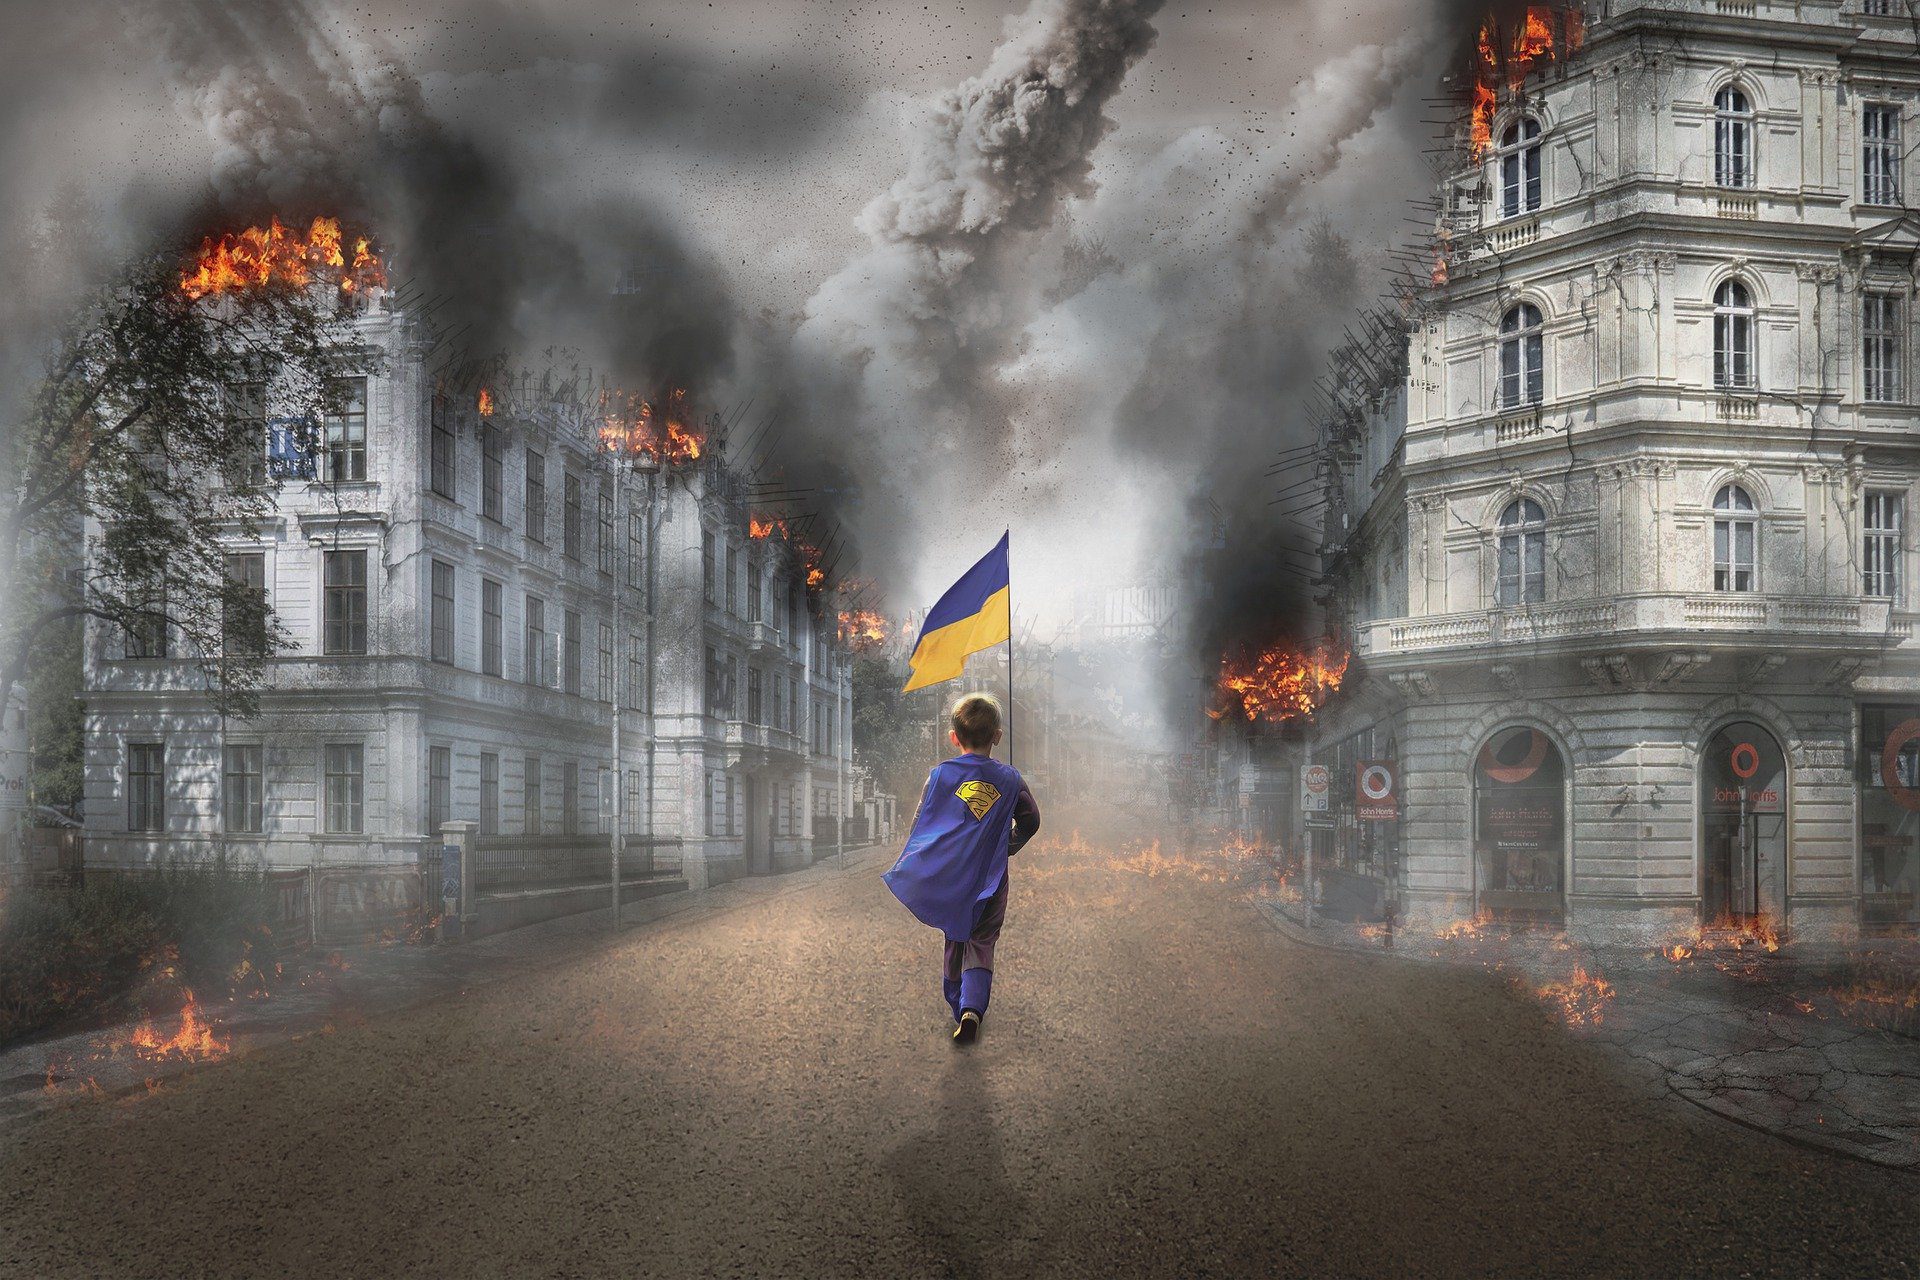 Putin, bir yıl önce Avrasyacı söylemlerle Ukrayna’ya saldırırken birkaç günde Kiev’deki Atlantikçi Zelensky’yi devirerek istediği yönetimi kuracağından emindi. İki tarafın askeri kapasitesi karşılaştırıldığında Rusların kısa zamanda bunu başaracağına inananlar hiç de az değildi. Ancak söz konusu Ukrayna olunca birçok değişkeni hesaba katmak gerek. - ukraine ukrayna savas cocuk bomba yikinti